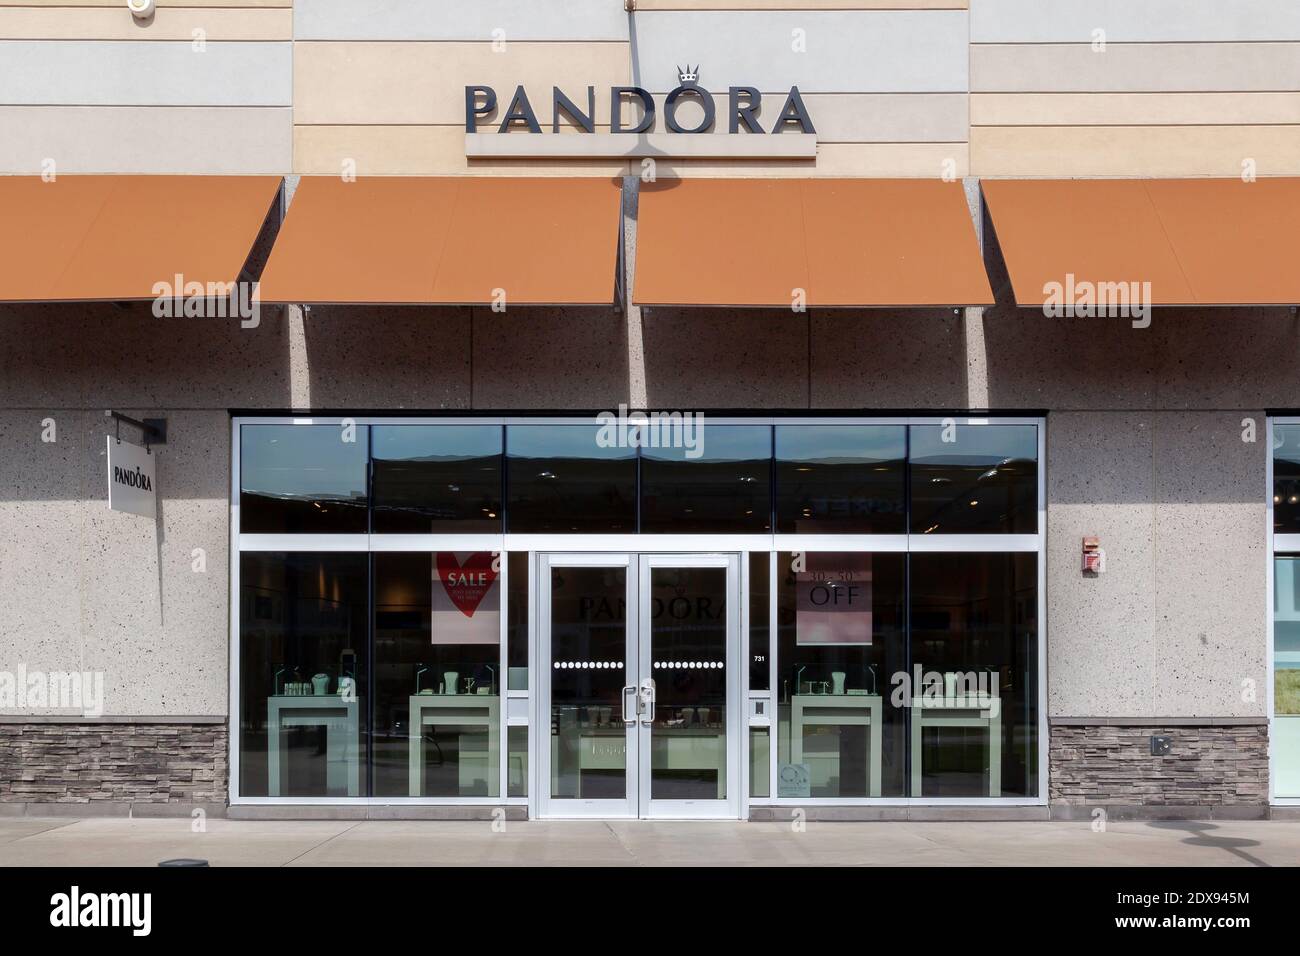 Le magasin Pandora est vu à Niagara-on-the-Lake, Ontario, Canada. Banque D'Images